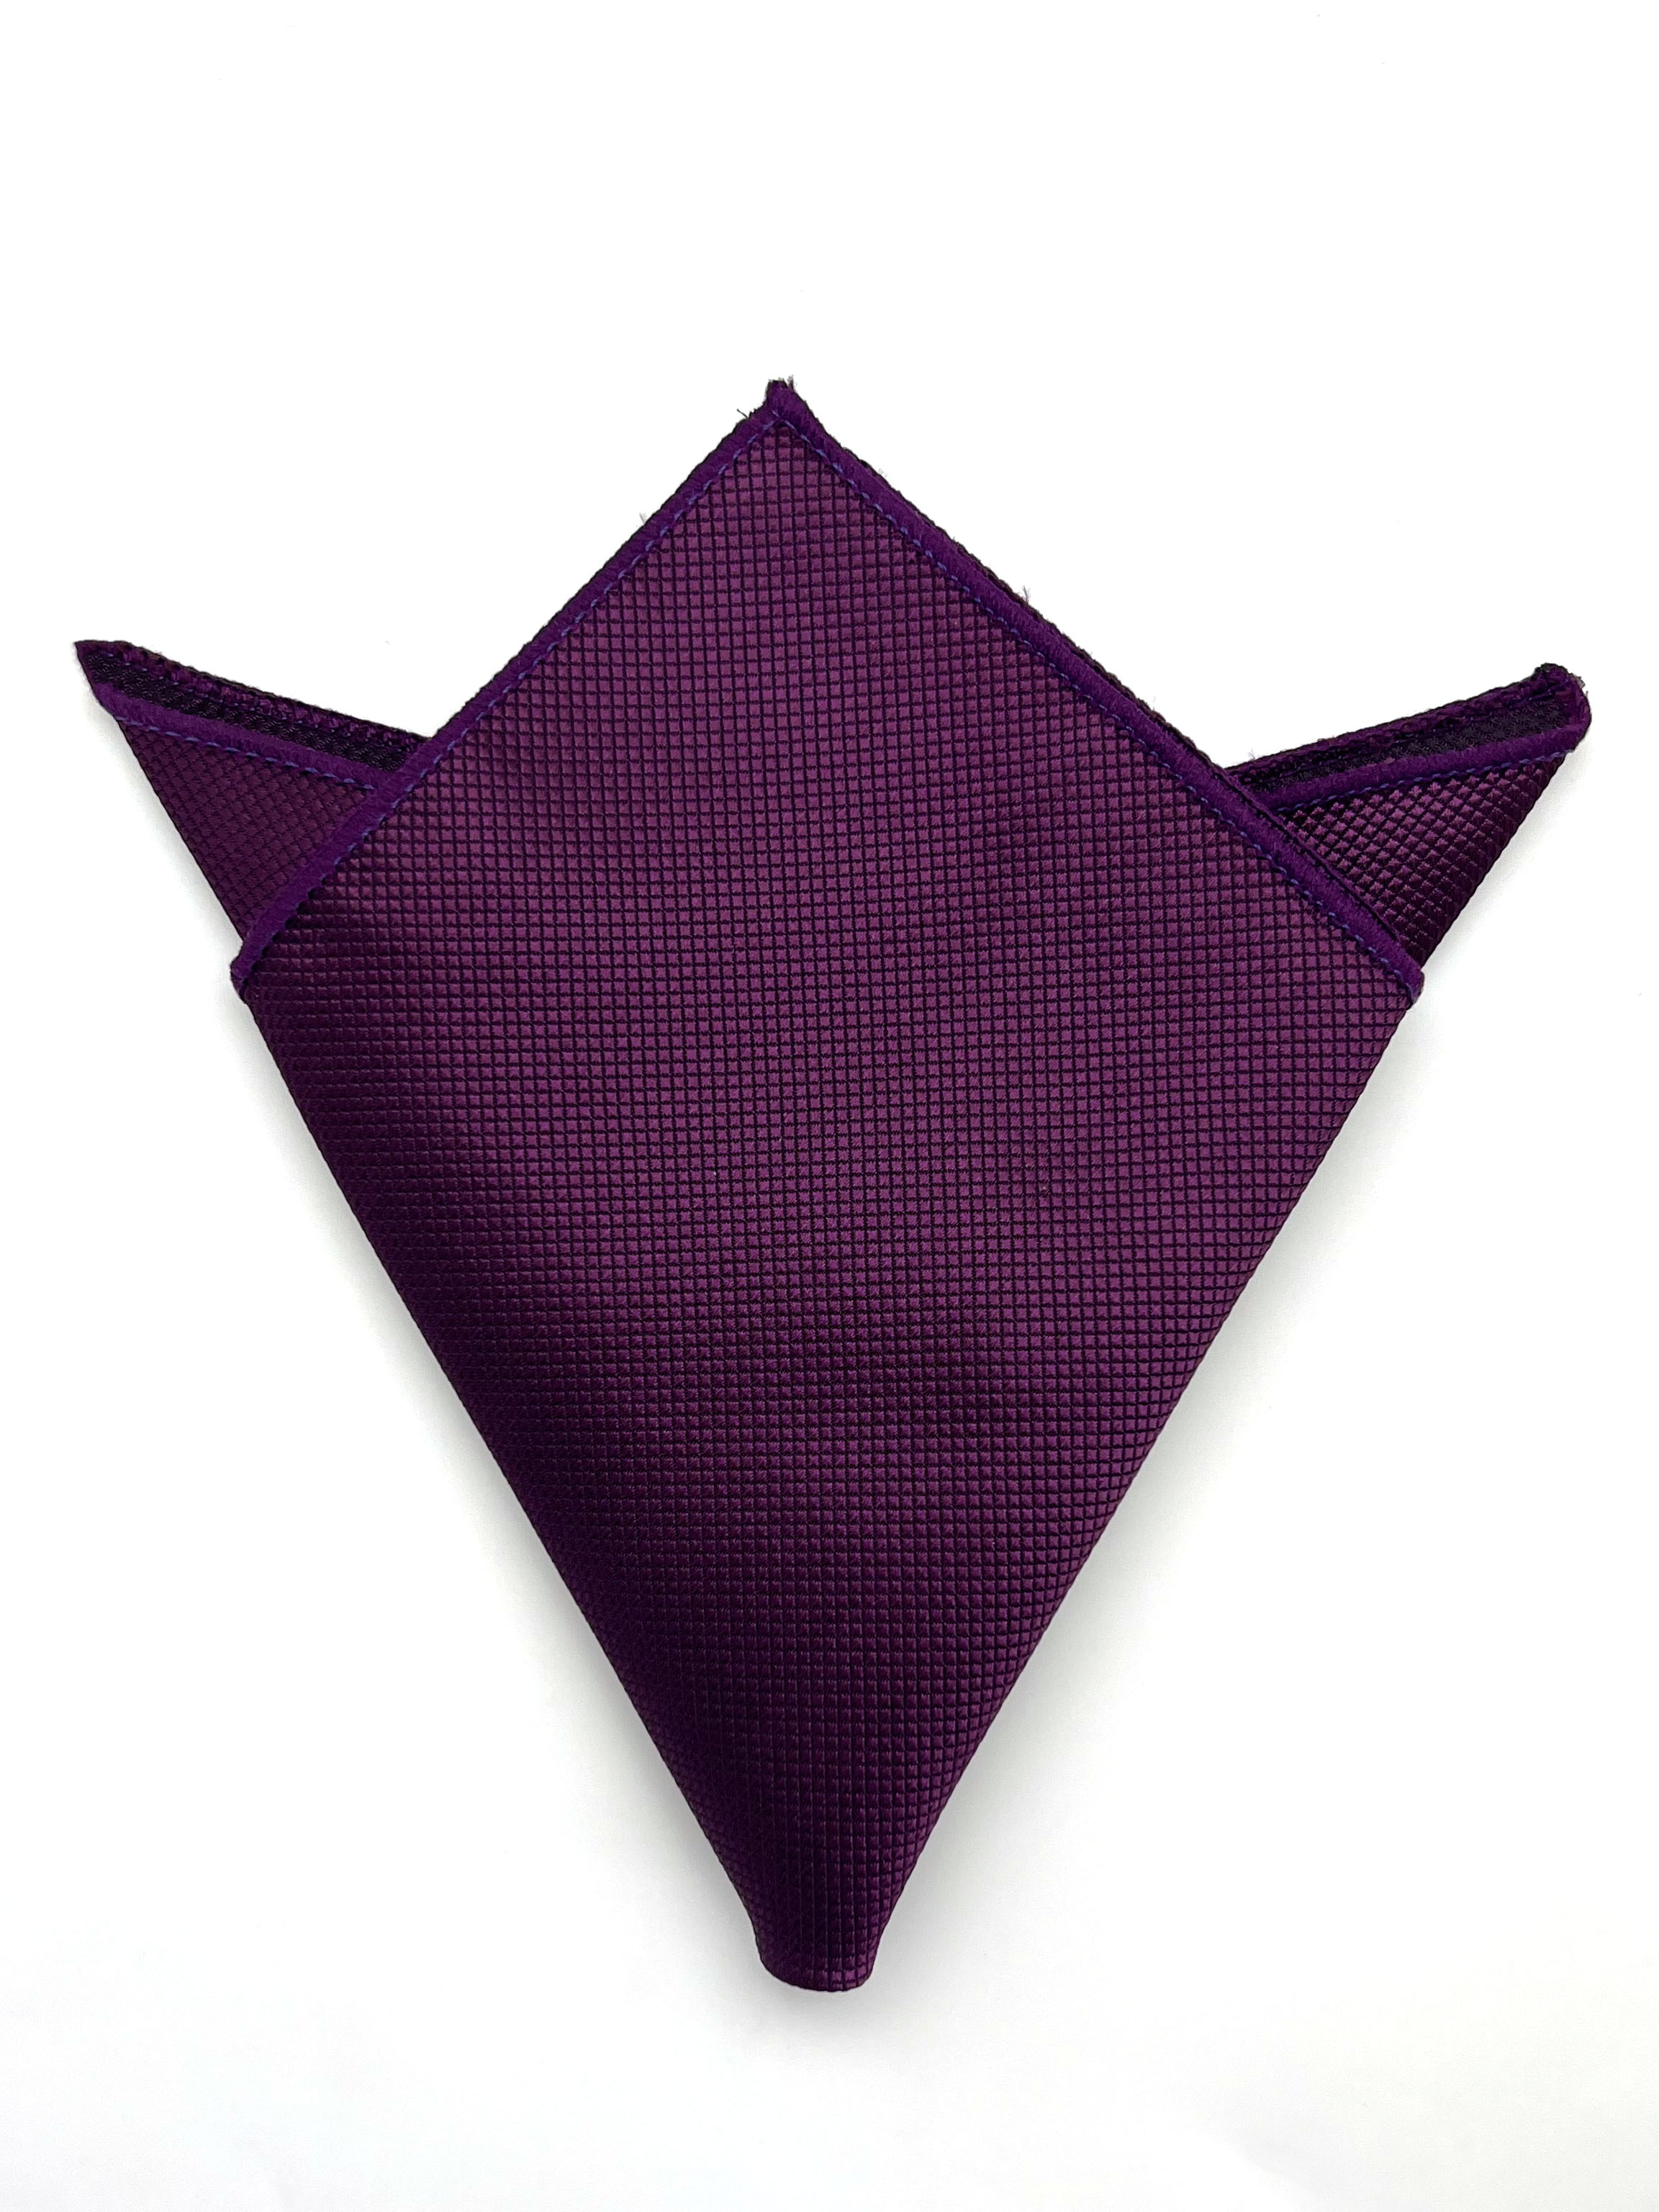 Платок в карман пиджака фиолетовый с ромбовидной текстурой описание: Материал - Полиэстер, Размеры - 24 см х 24 см, Страна производства - Турция;